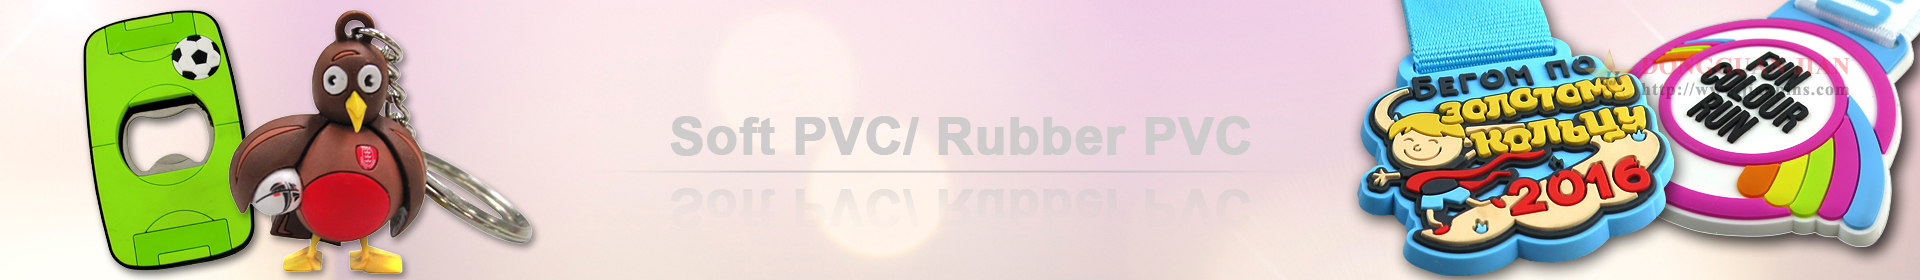 Soft PVC/ Rubber PVC